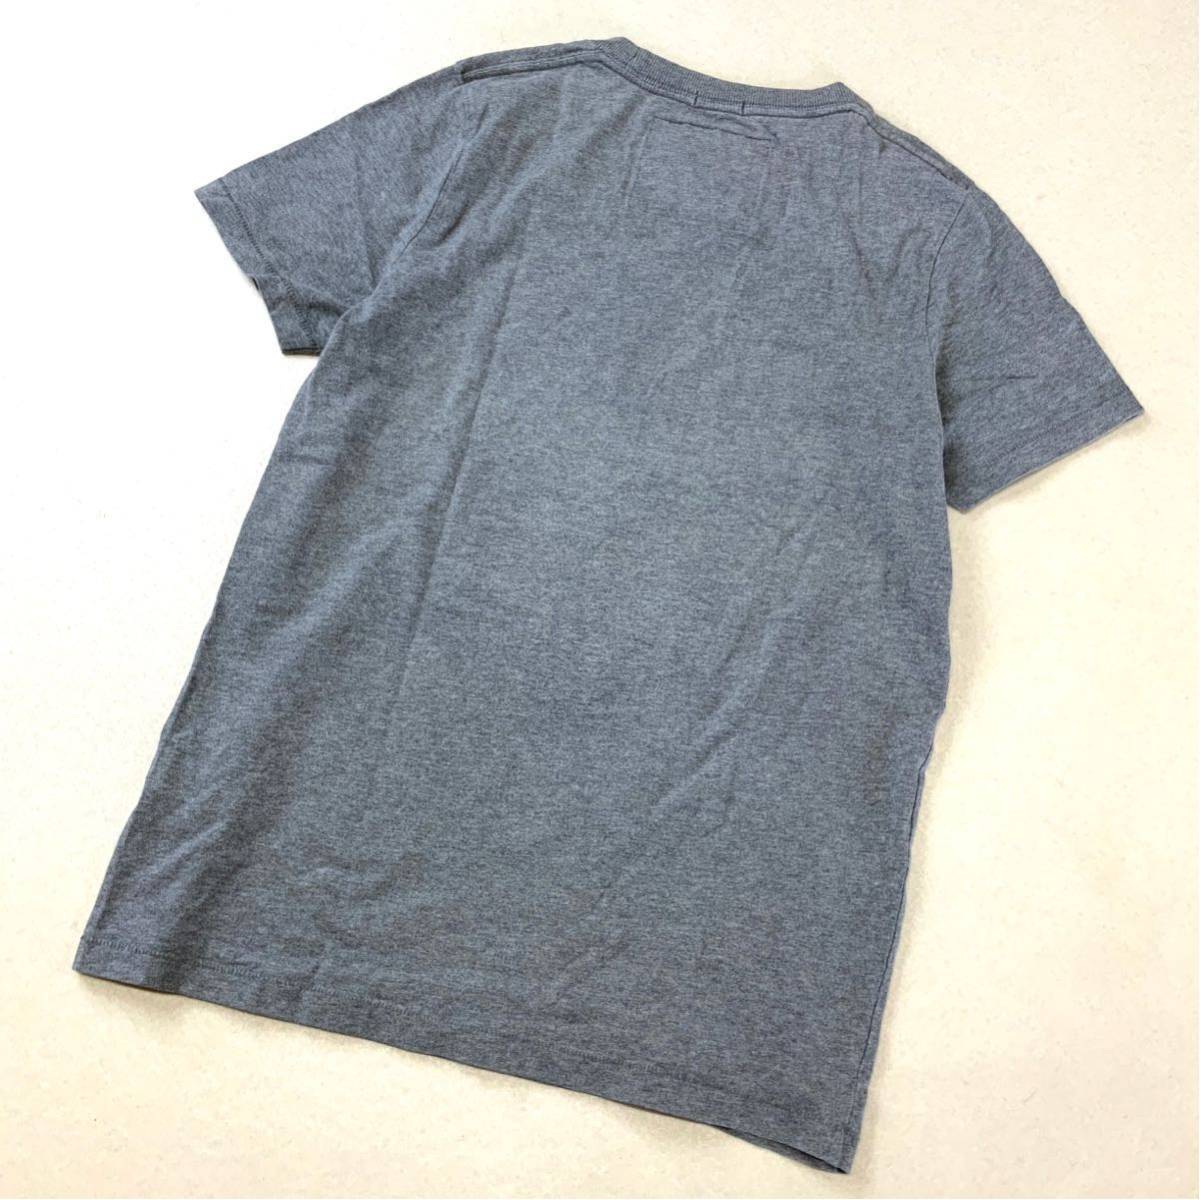 良品 Abercrombie&Fitch アバクロンビー&フィッチ アメコミプリント 半袖 tシャツ メンズ Mサイズ グレー_画像2